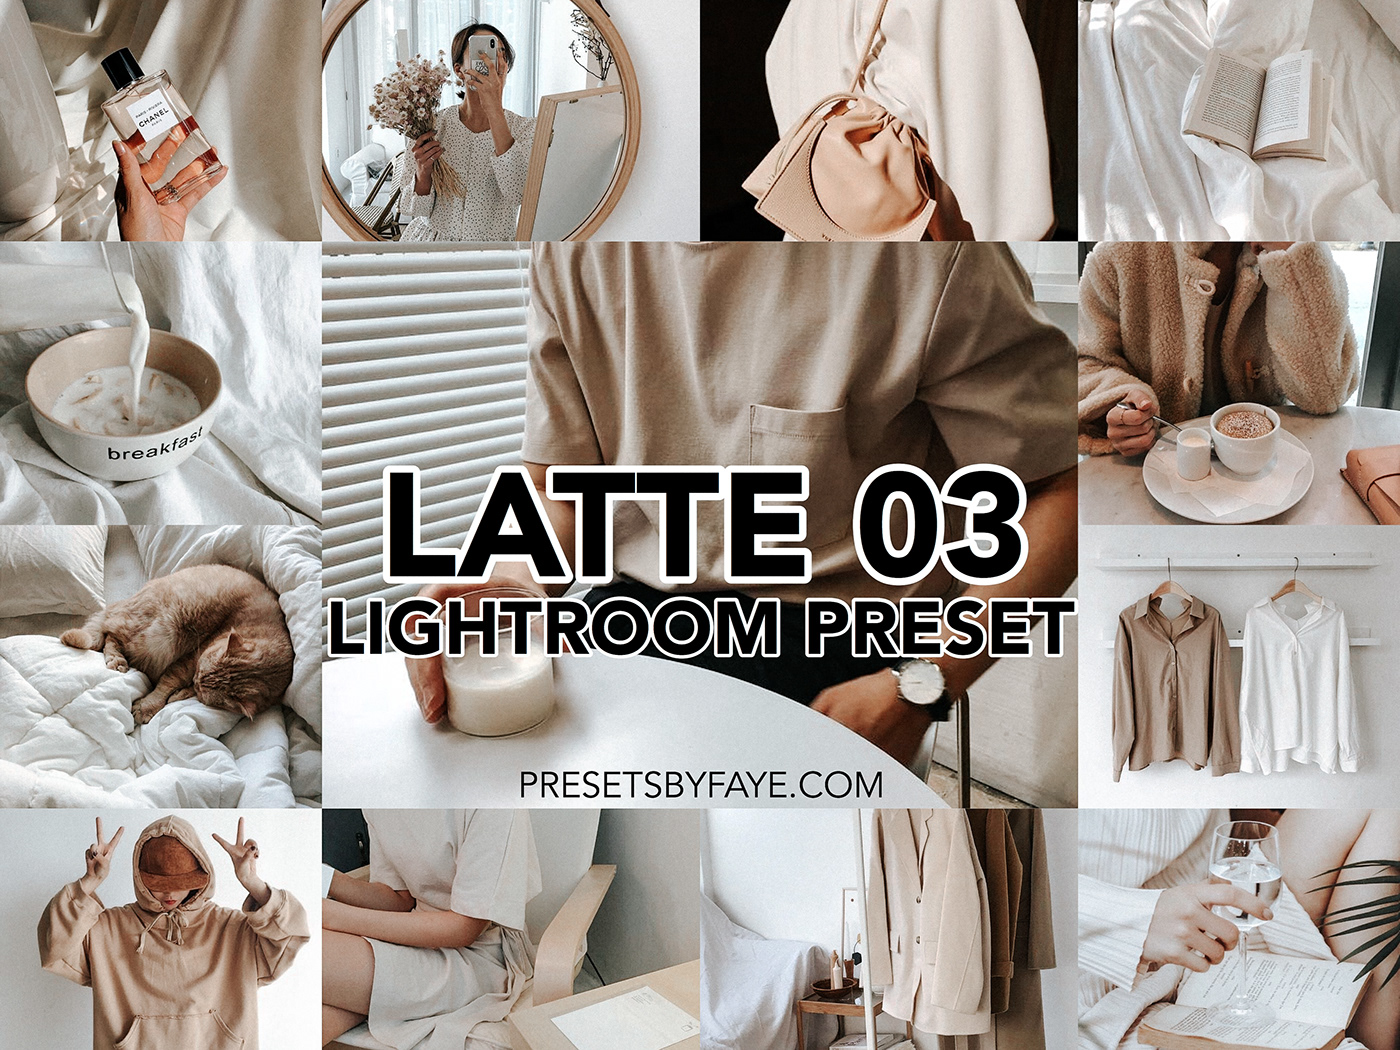 lightroom lightroom filters Lightroom Mobile lightroom presets presetsbyfaye